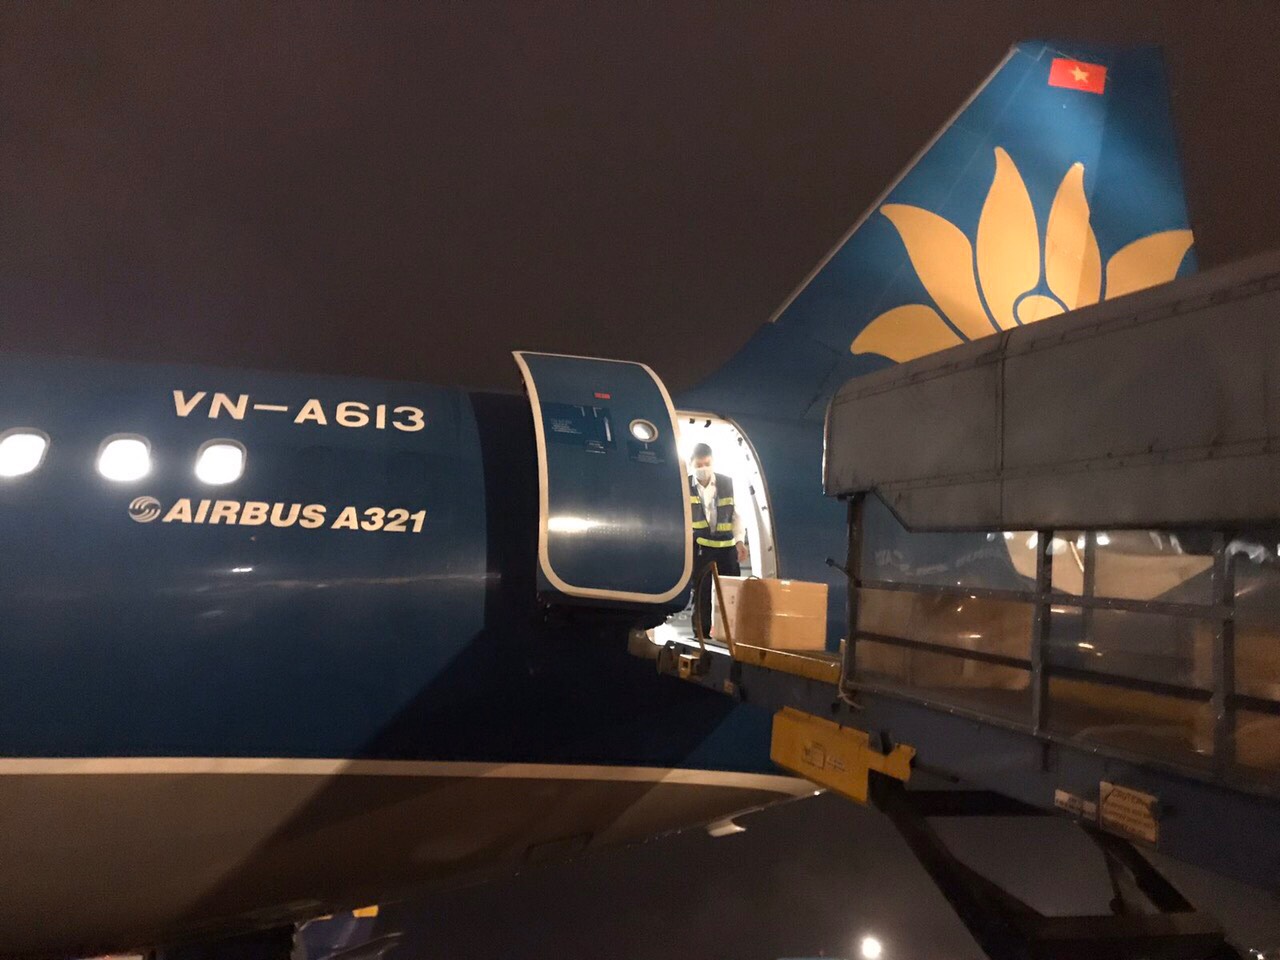 Chuyến bay vận chuyển các trang thiết bị y tế khác do Chính phủ và nhân dân Việt Nam viện trợ Chính phủ và nhân dân Lào.